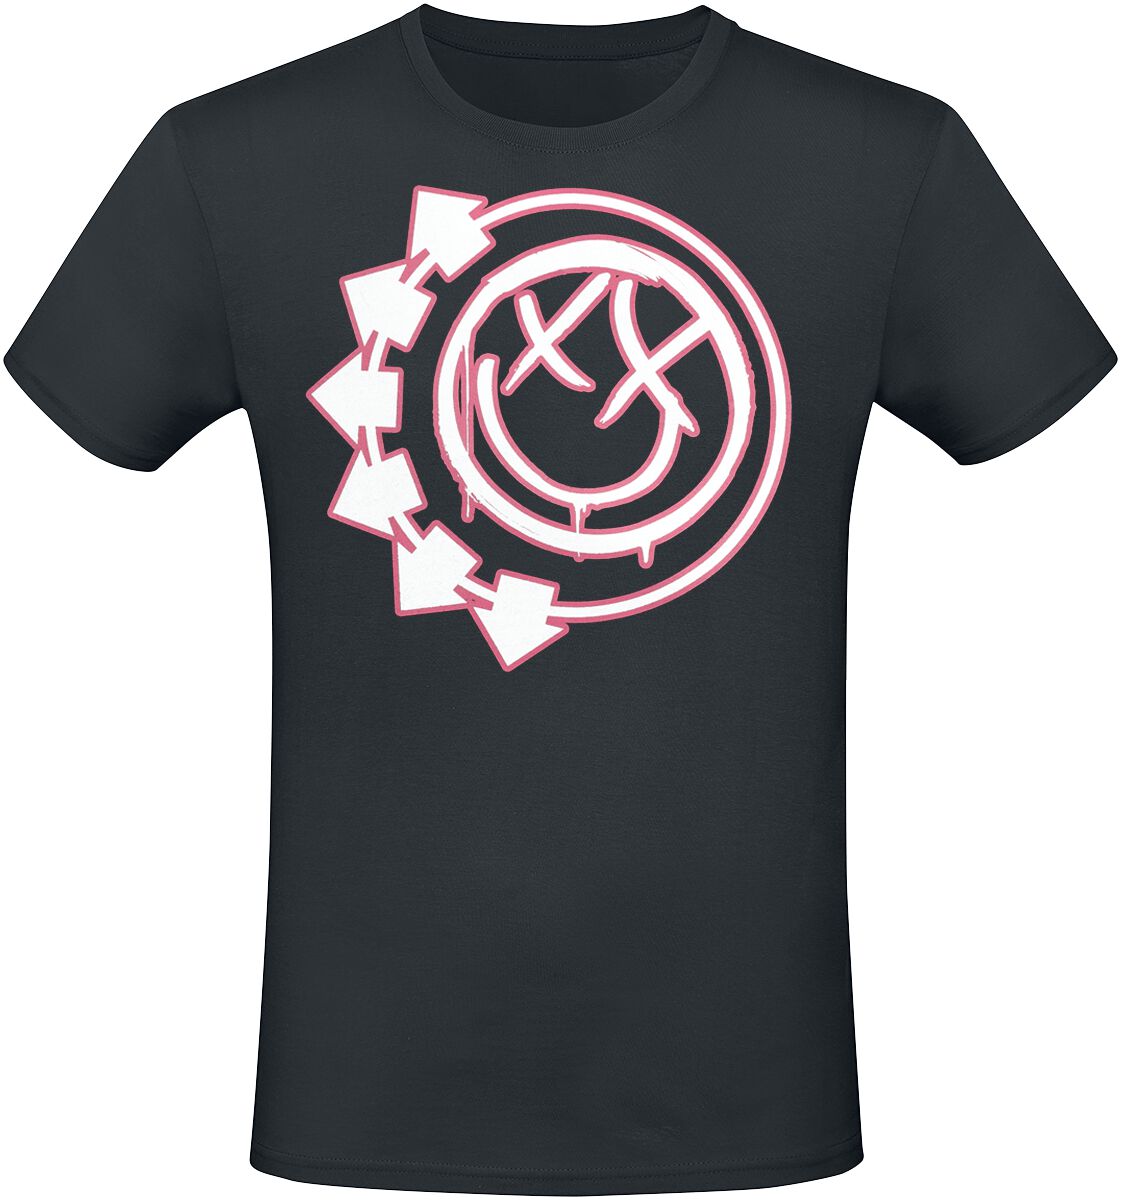 Blink-182 T-Shirt - Harrows Smiley - S bis 3XL - für Männer - Größe S - schwarz  - Lizenziertes Merchandise!